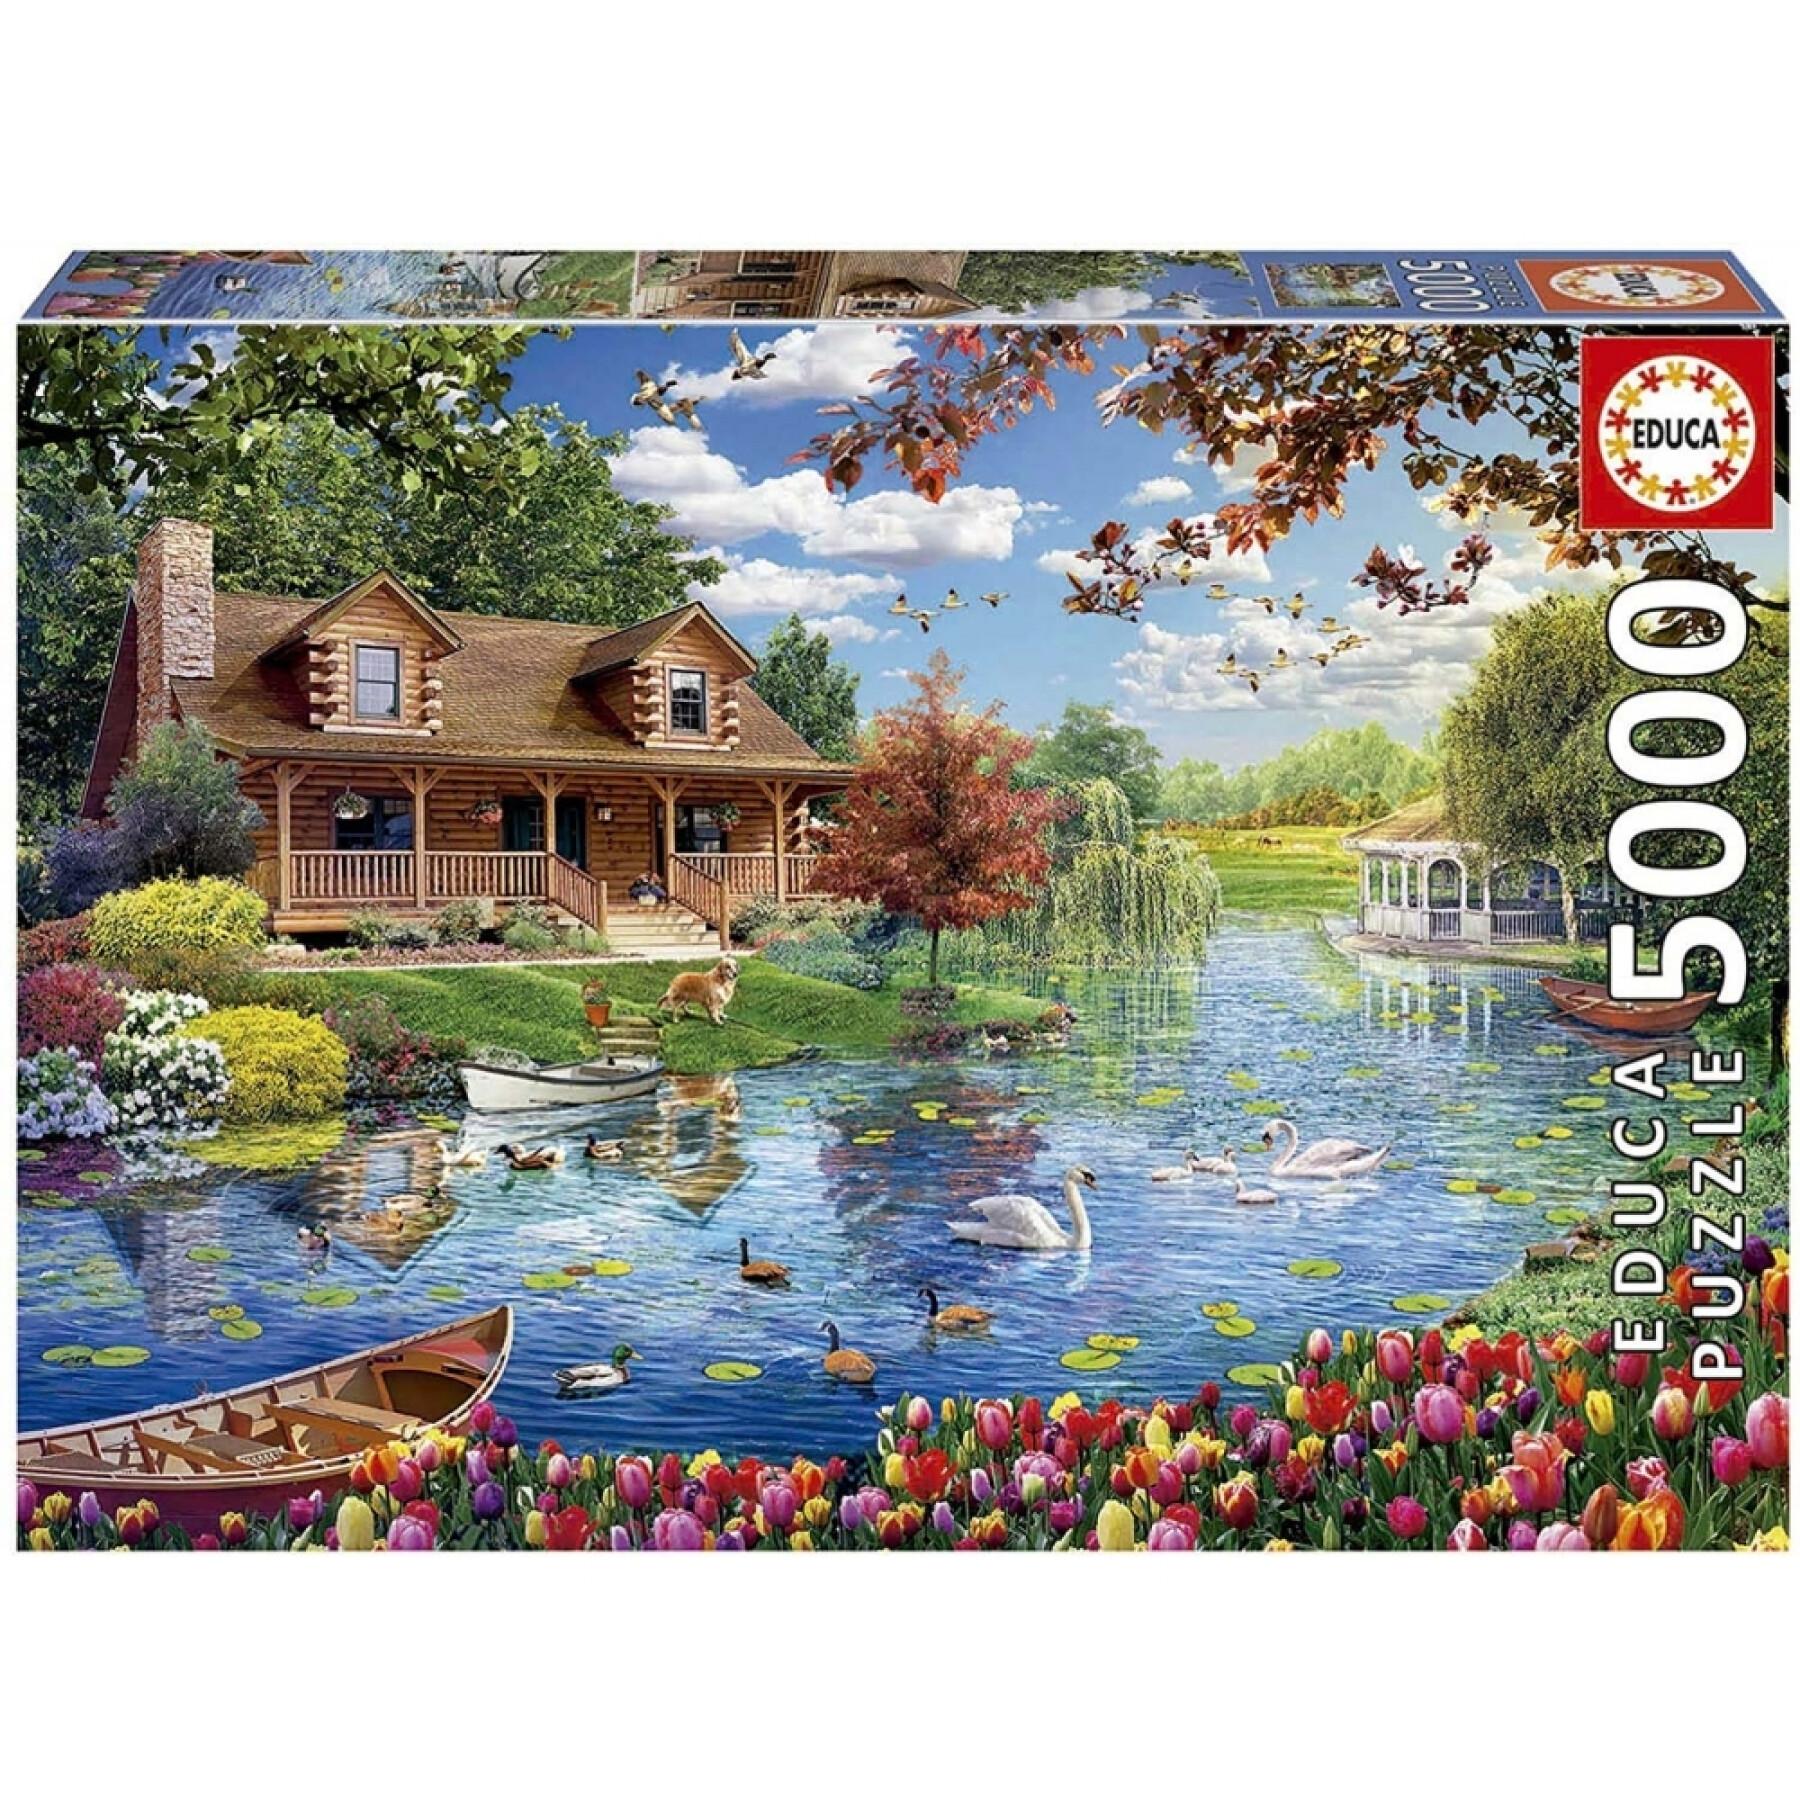 5000 piece puzzle Educa Casita En El Lago